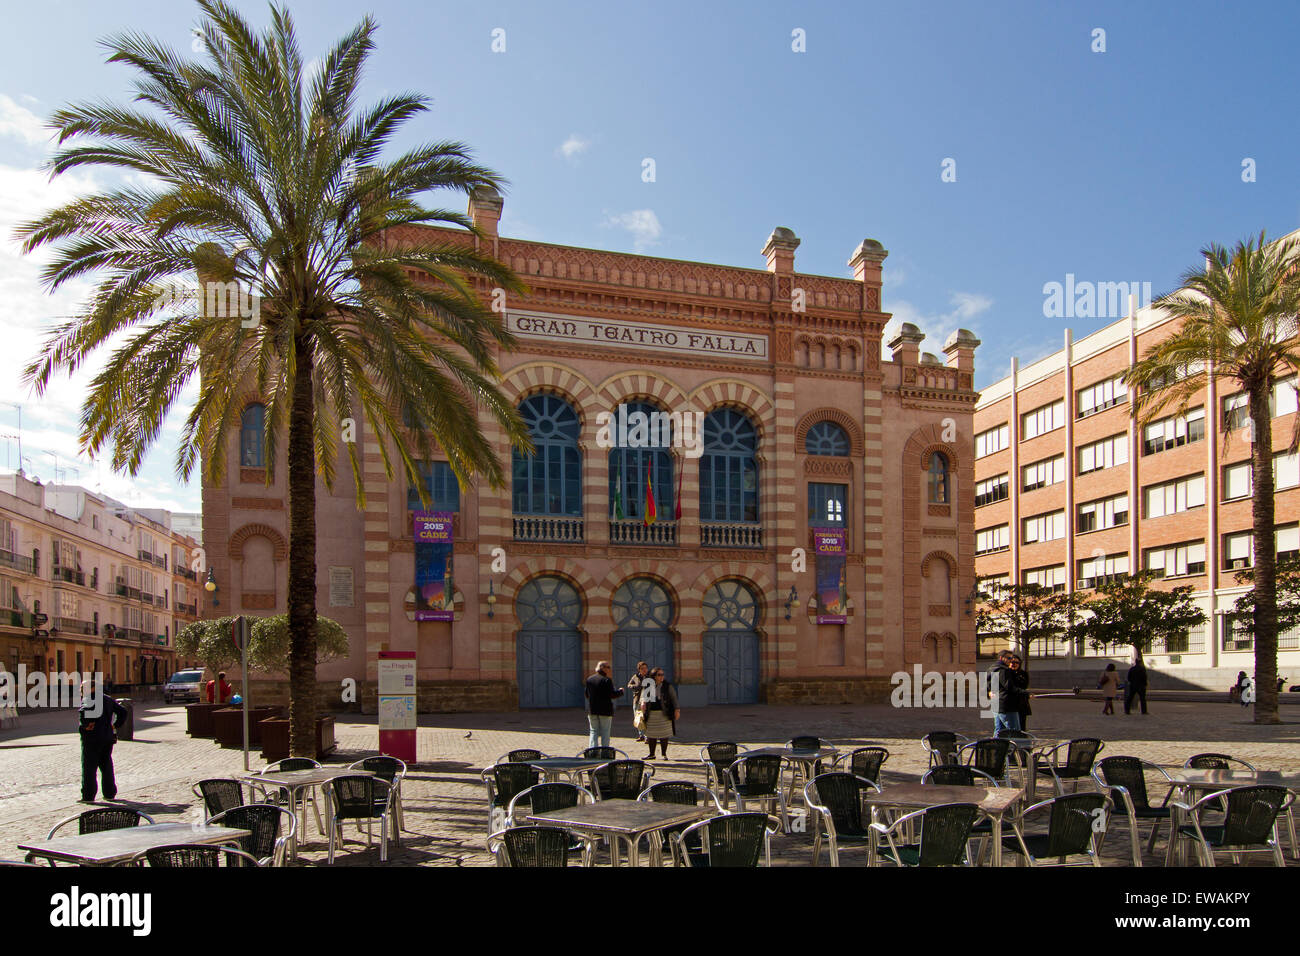 The Gran Teatro Falla. Theater in Cadiz, Spain. Stock Photo